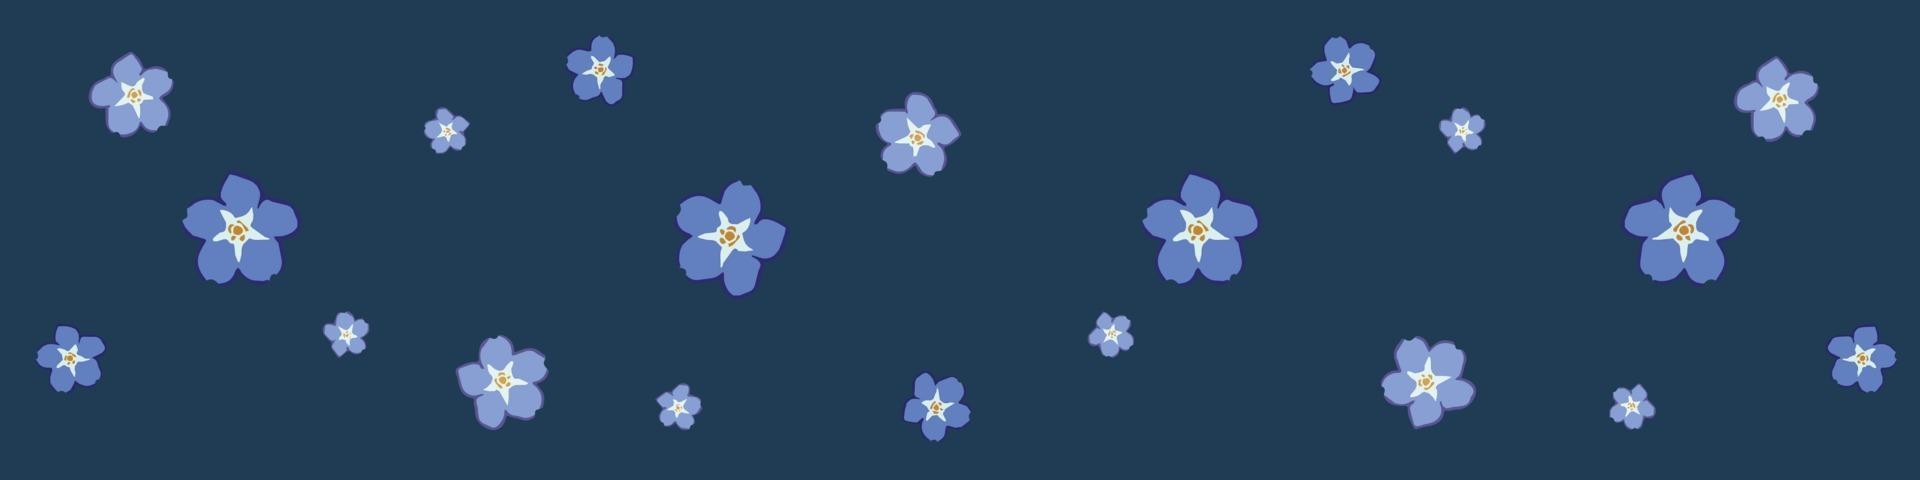 fiori su sfondo blu vettore